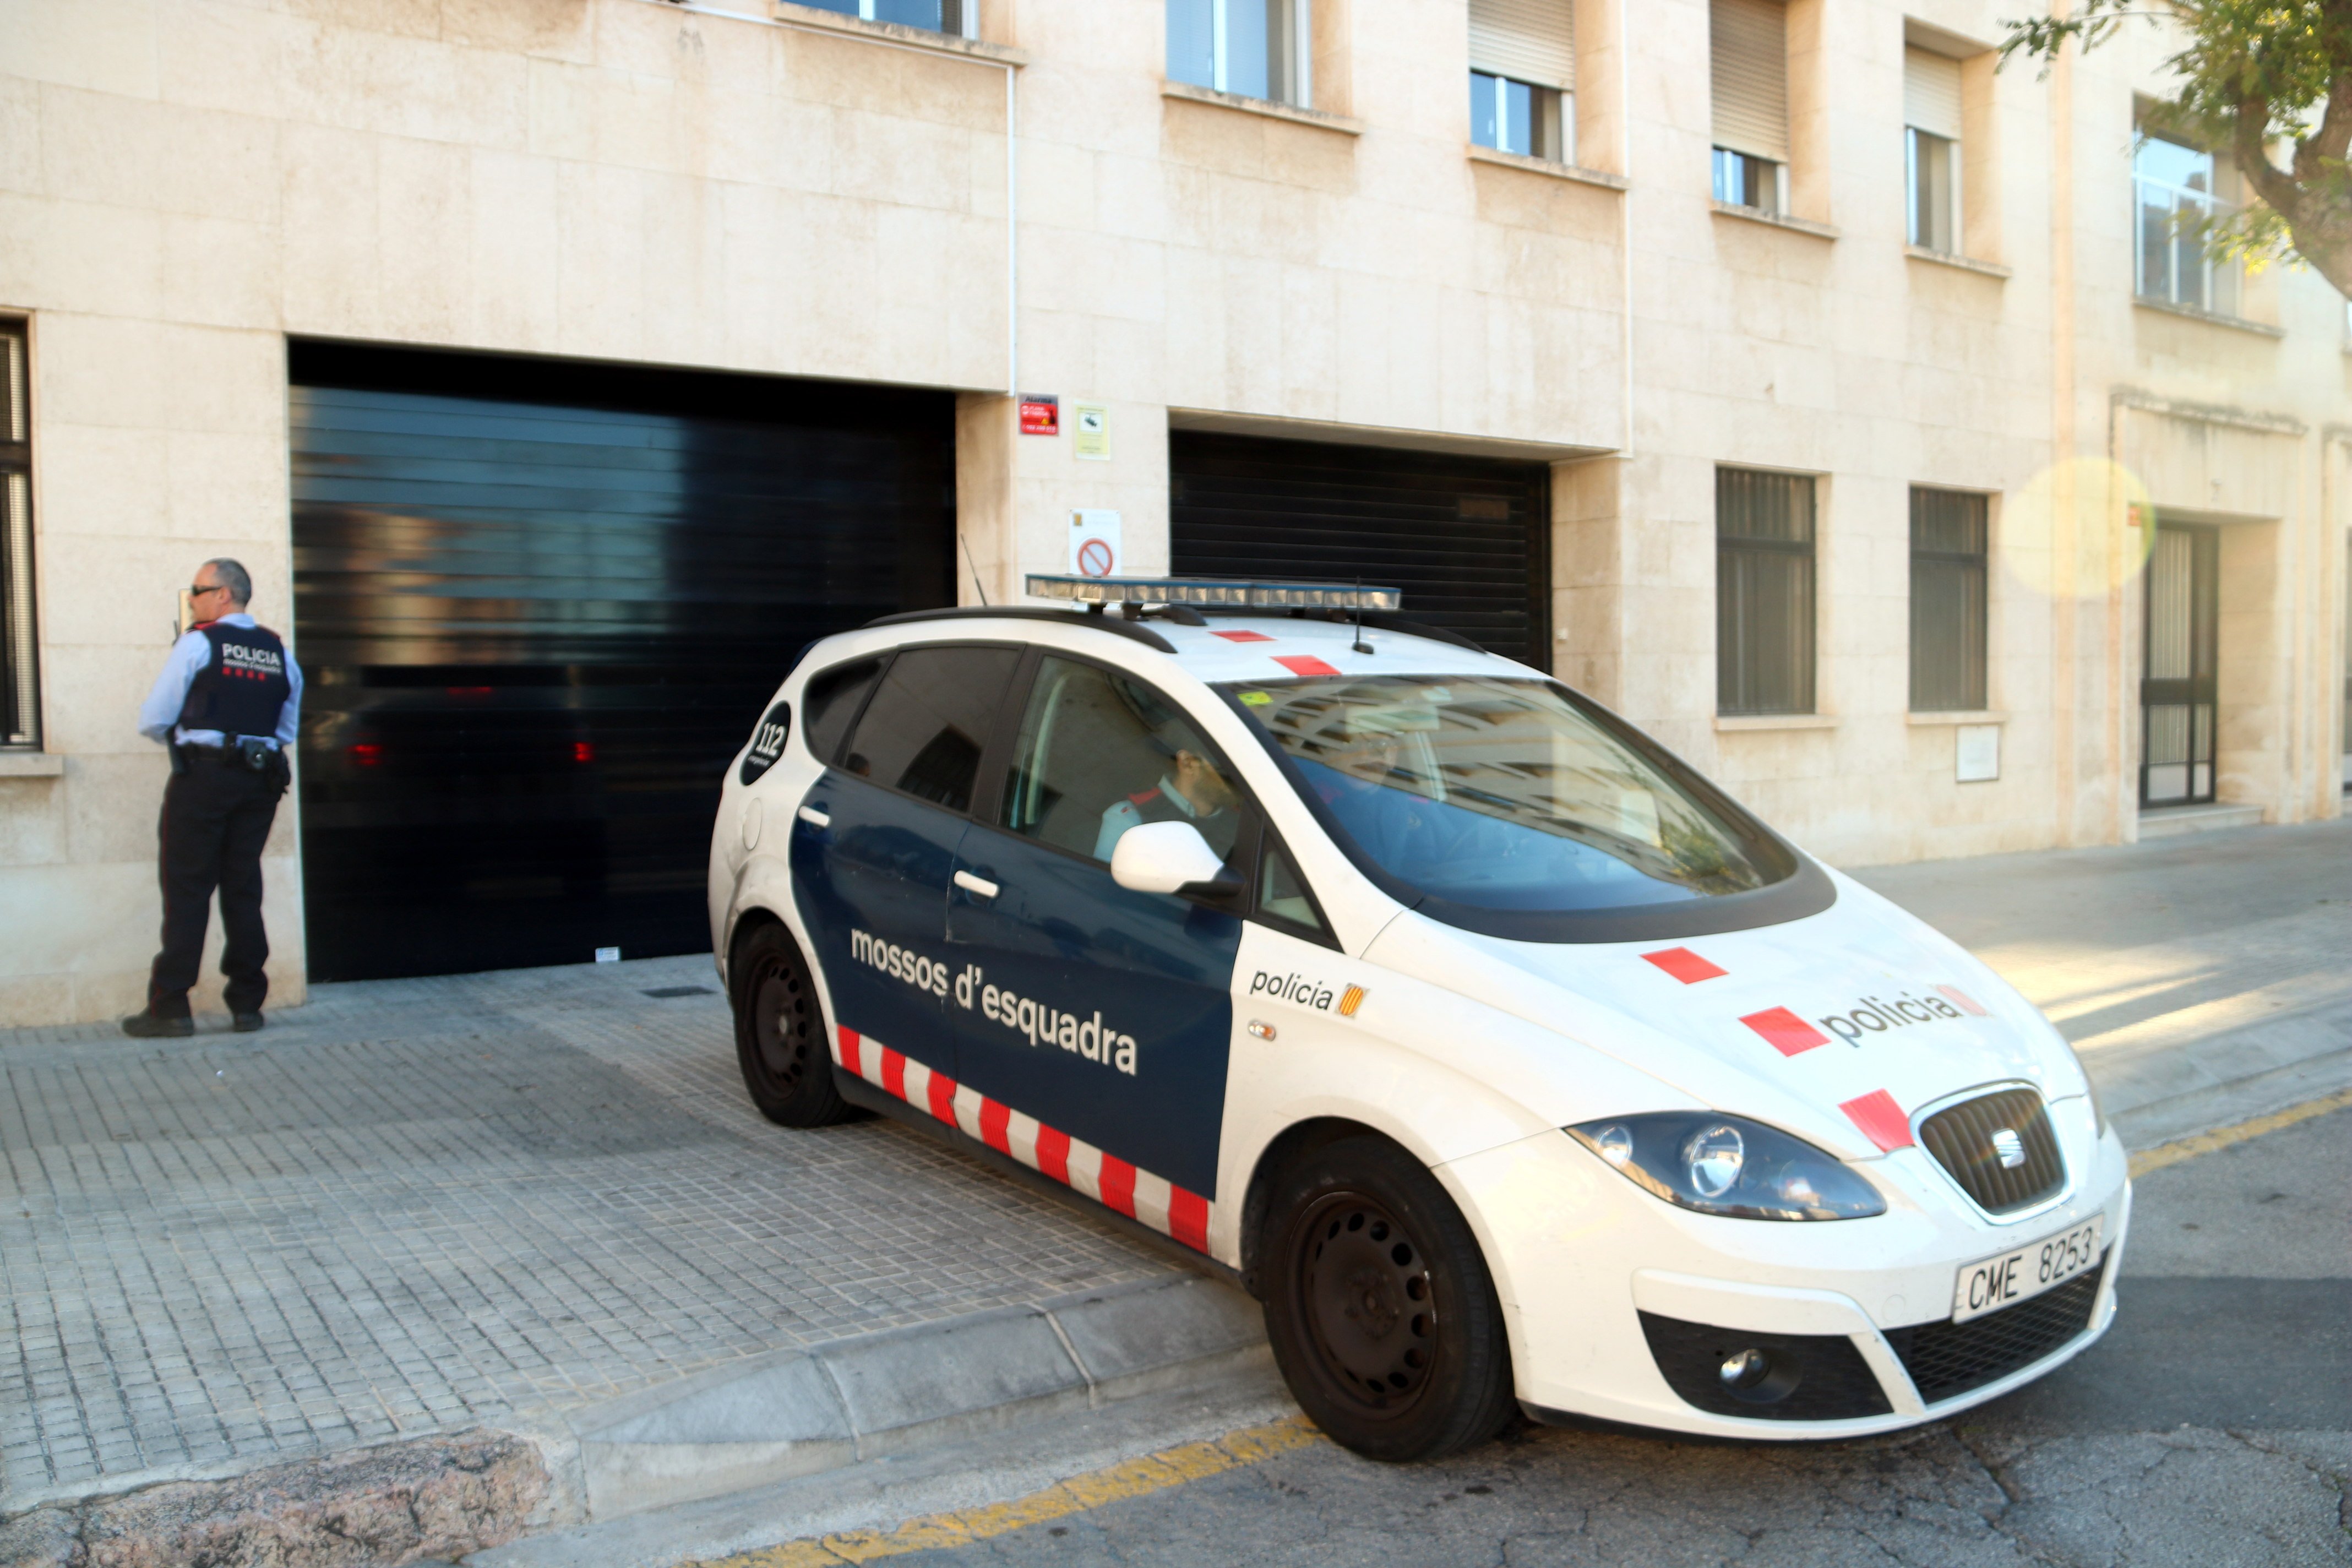 El jutge decreta presó per als pares que havien maltractat el seu nadó a Tarragona